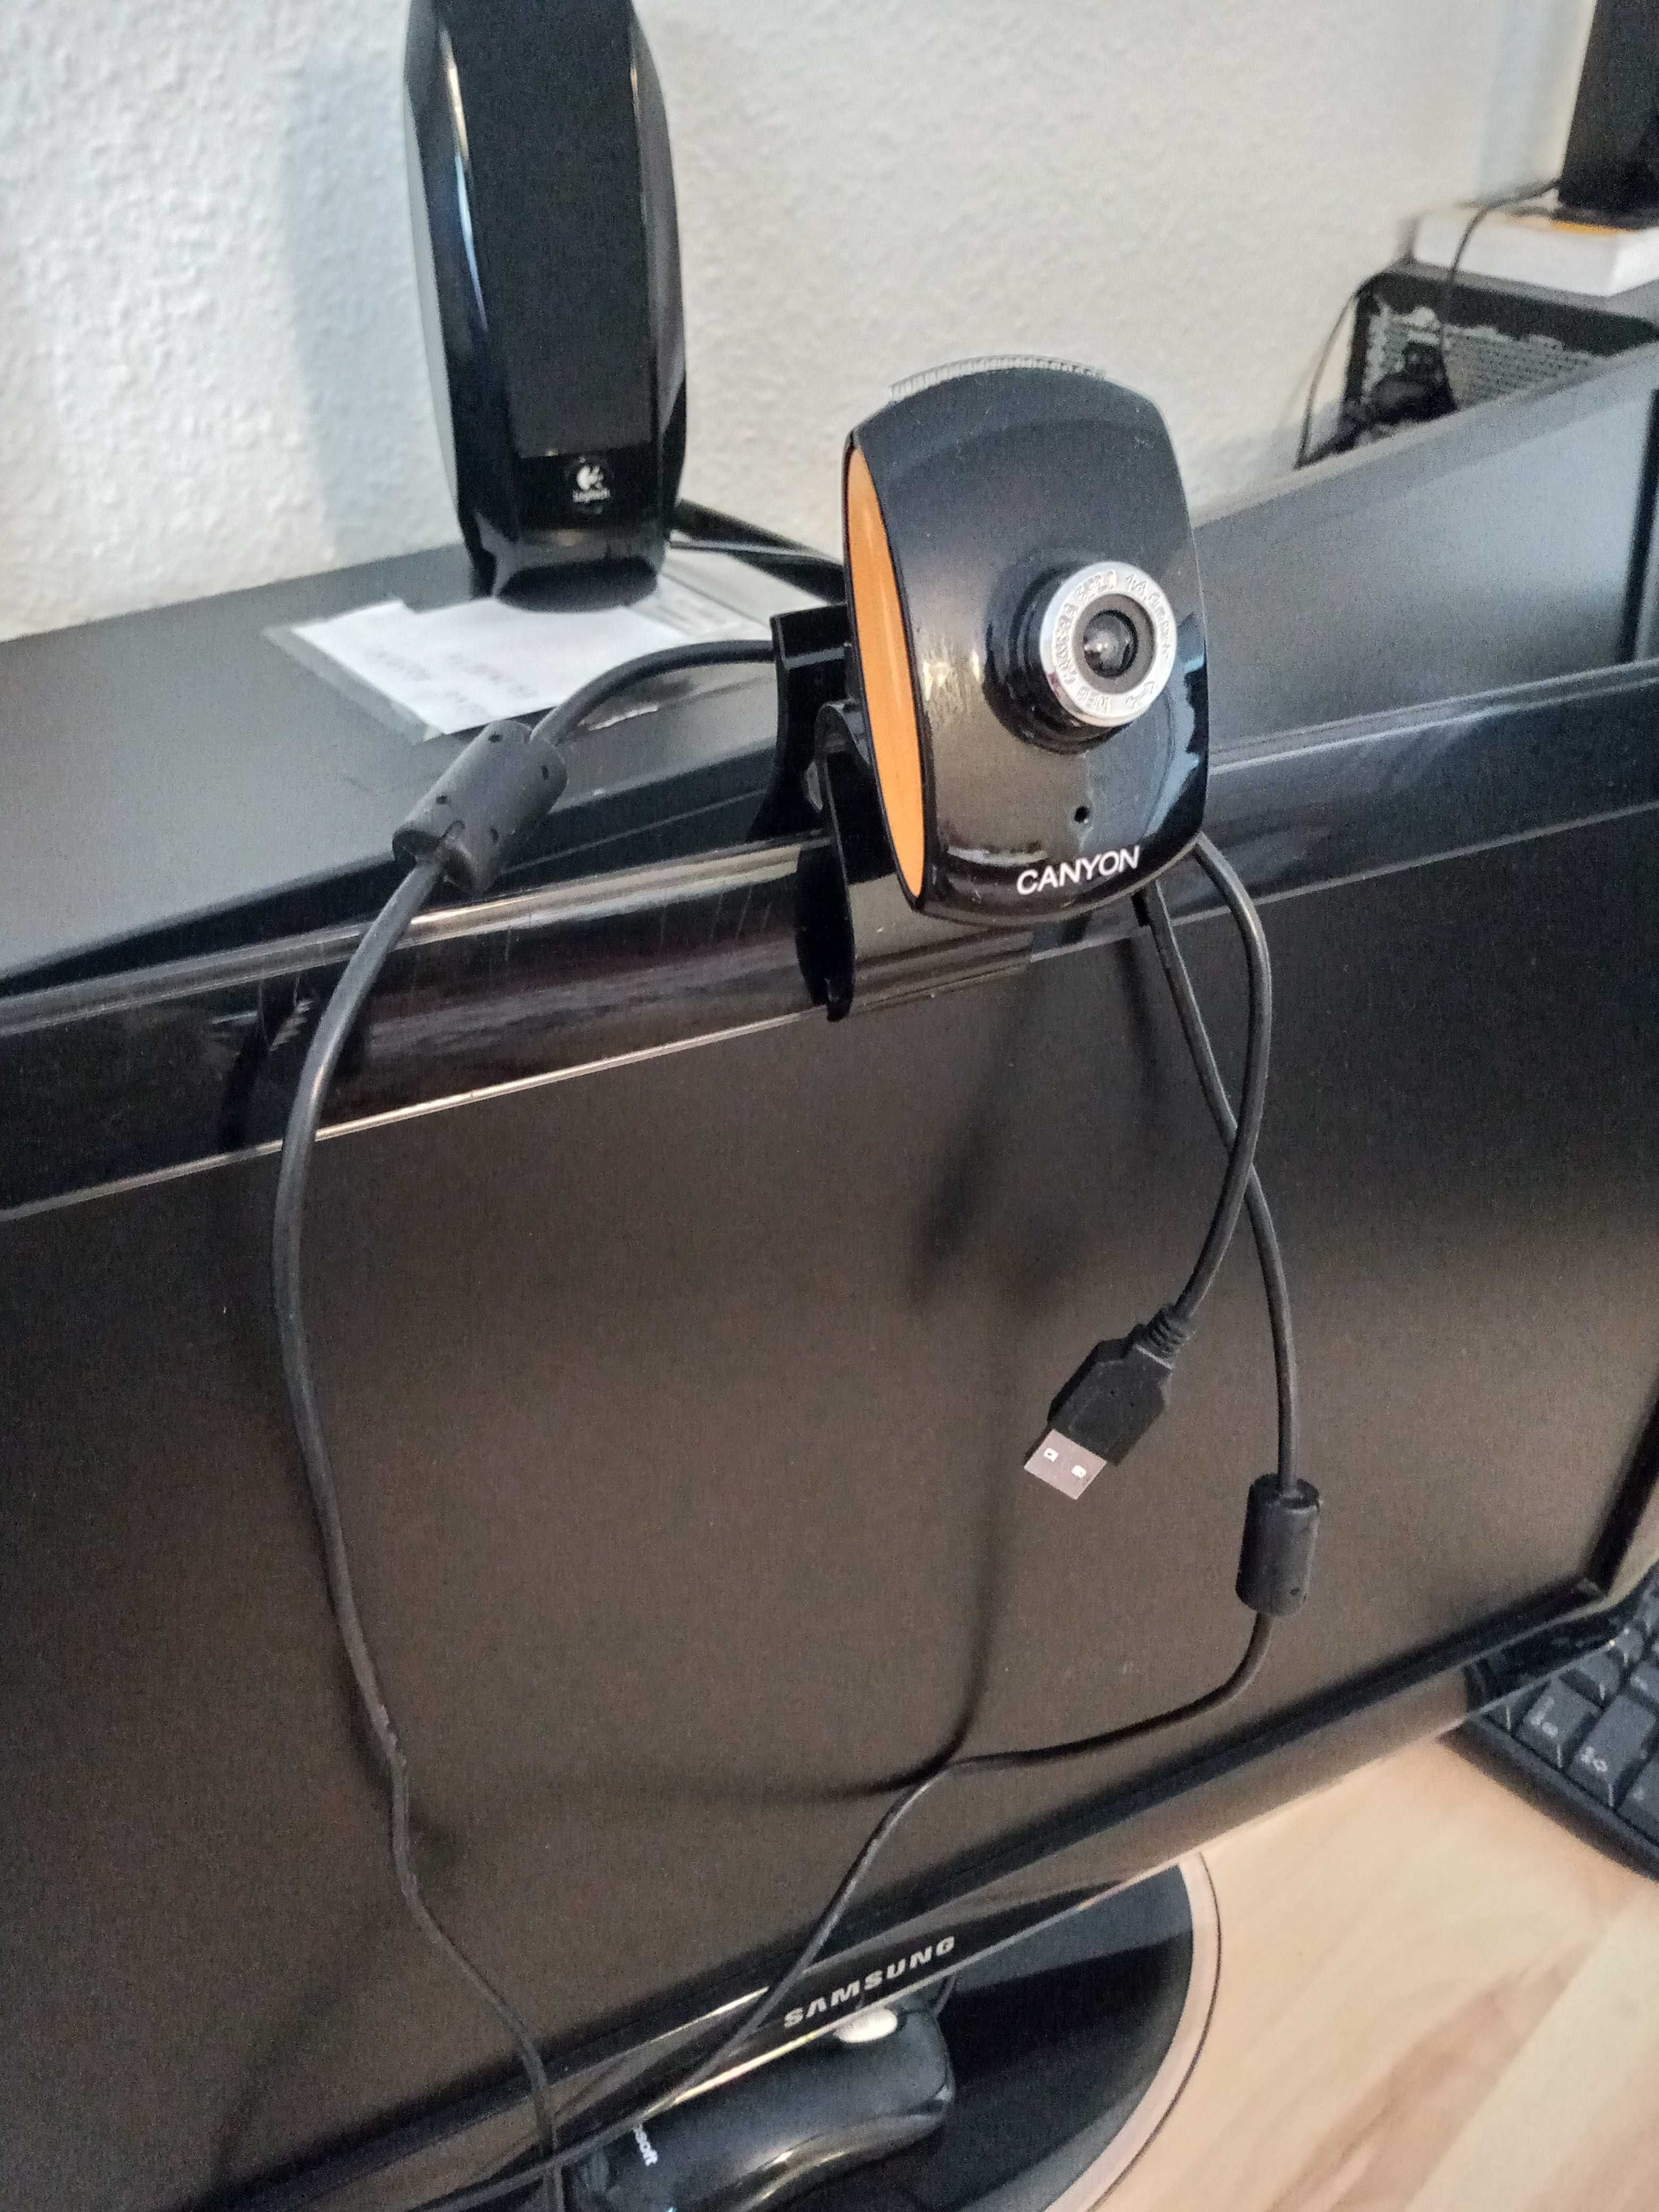 uzywana kamera internetowa CANYON, przewod USB, 1 właściciel